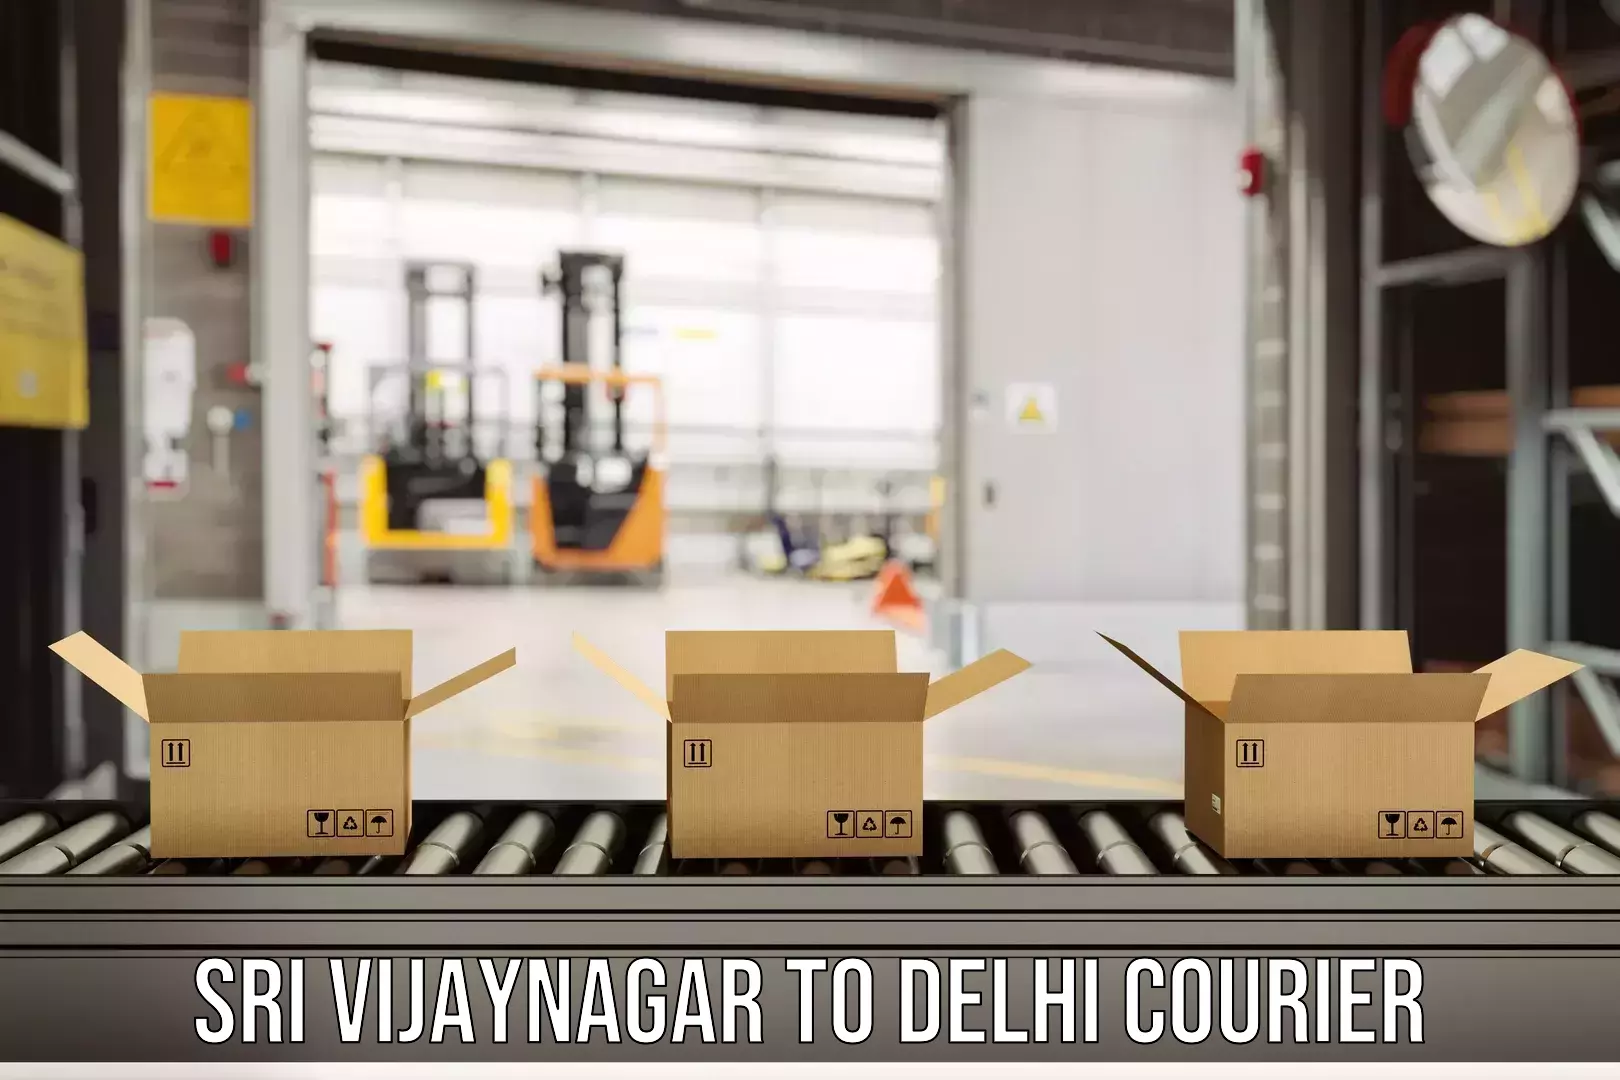 Professional parcel services Sri Vijaynagar to Delhi